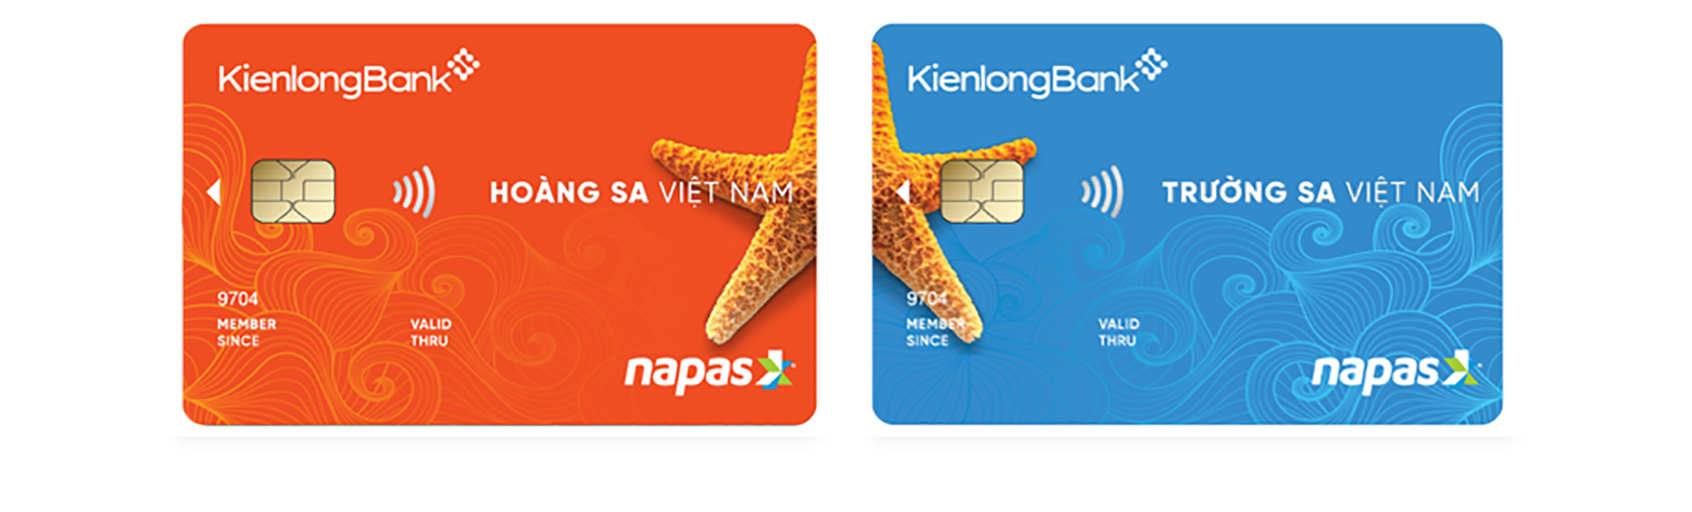 Kienlongbank domestic debit card (Hoang sa - Truong Sa)